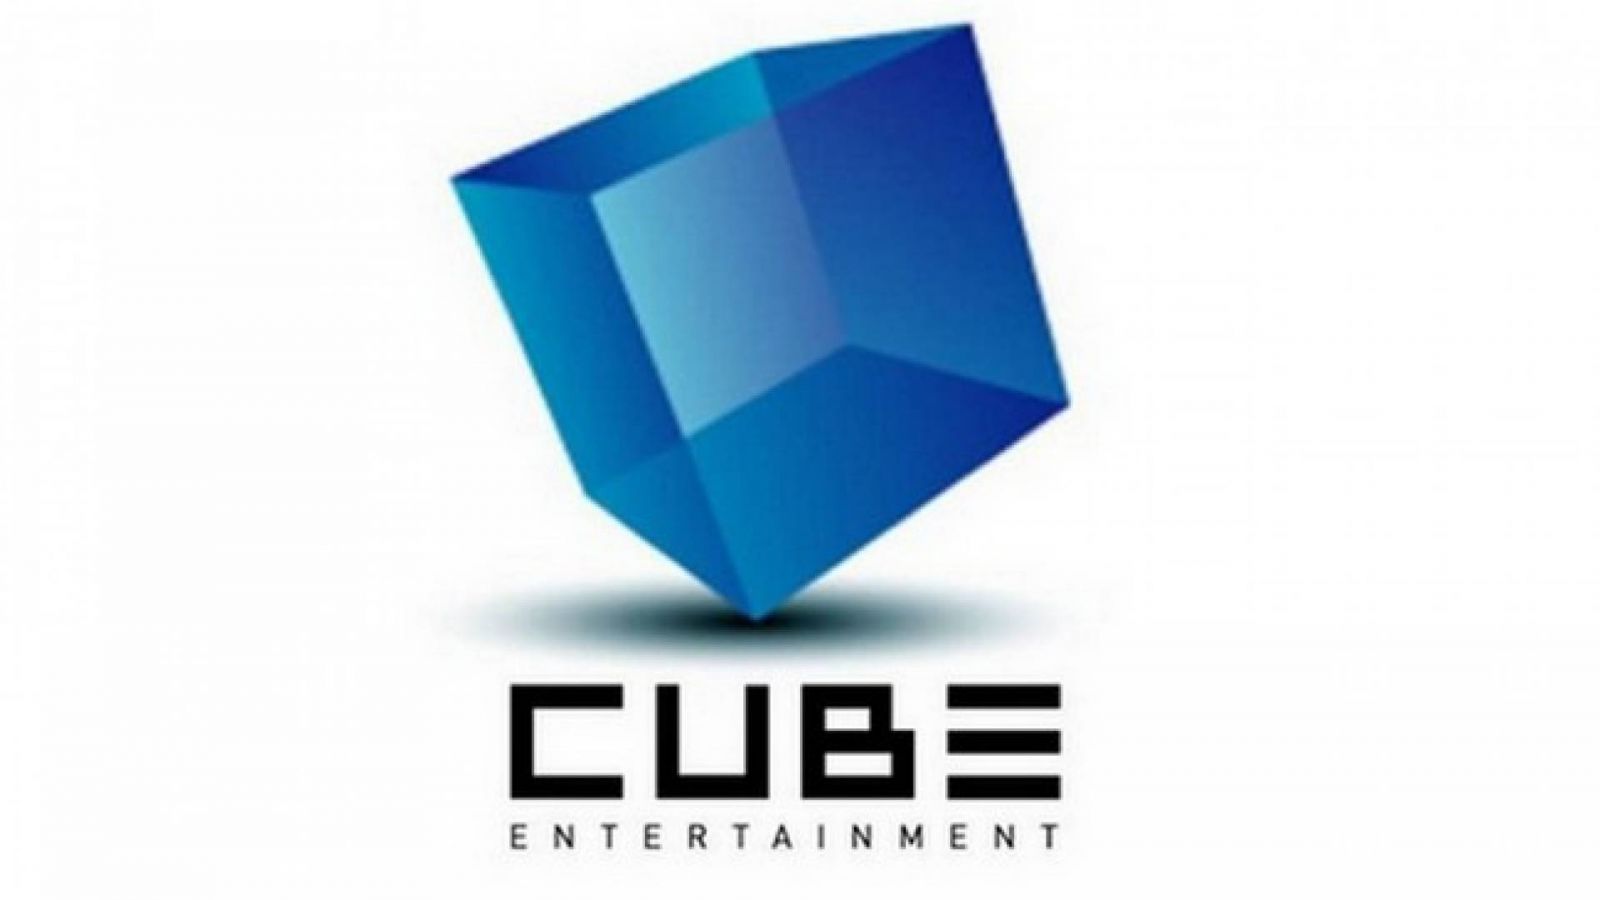 Artistas da Cube Entertainment vão se apresentar na China © Cube Entertainment